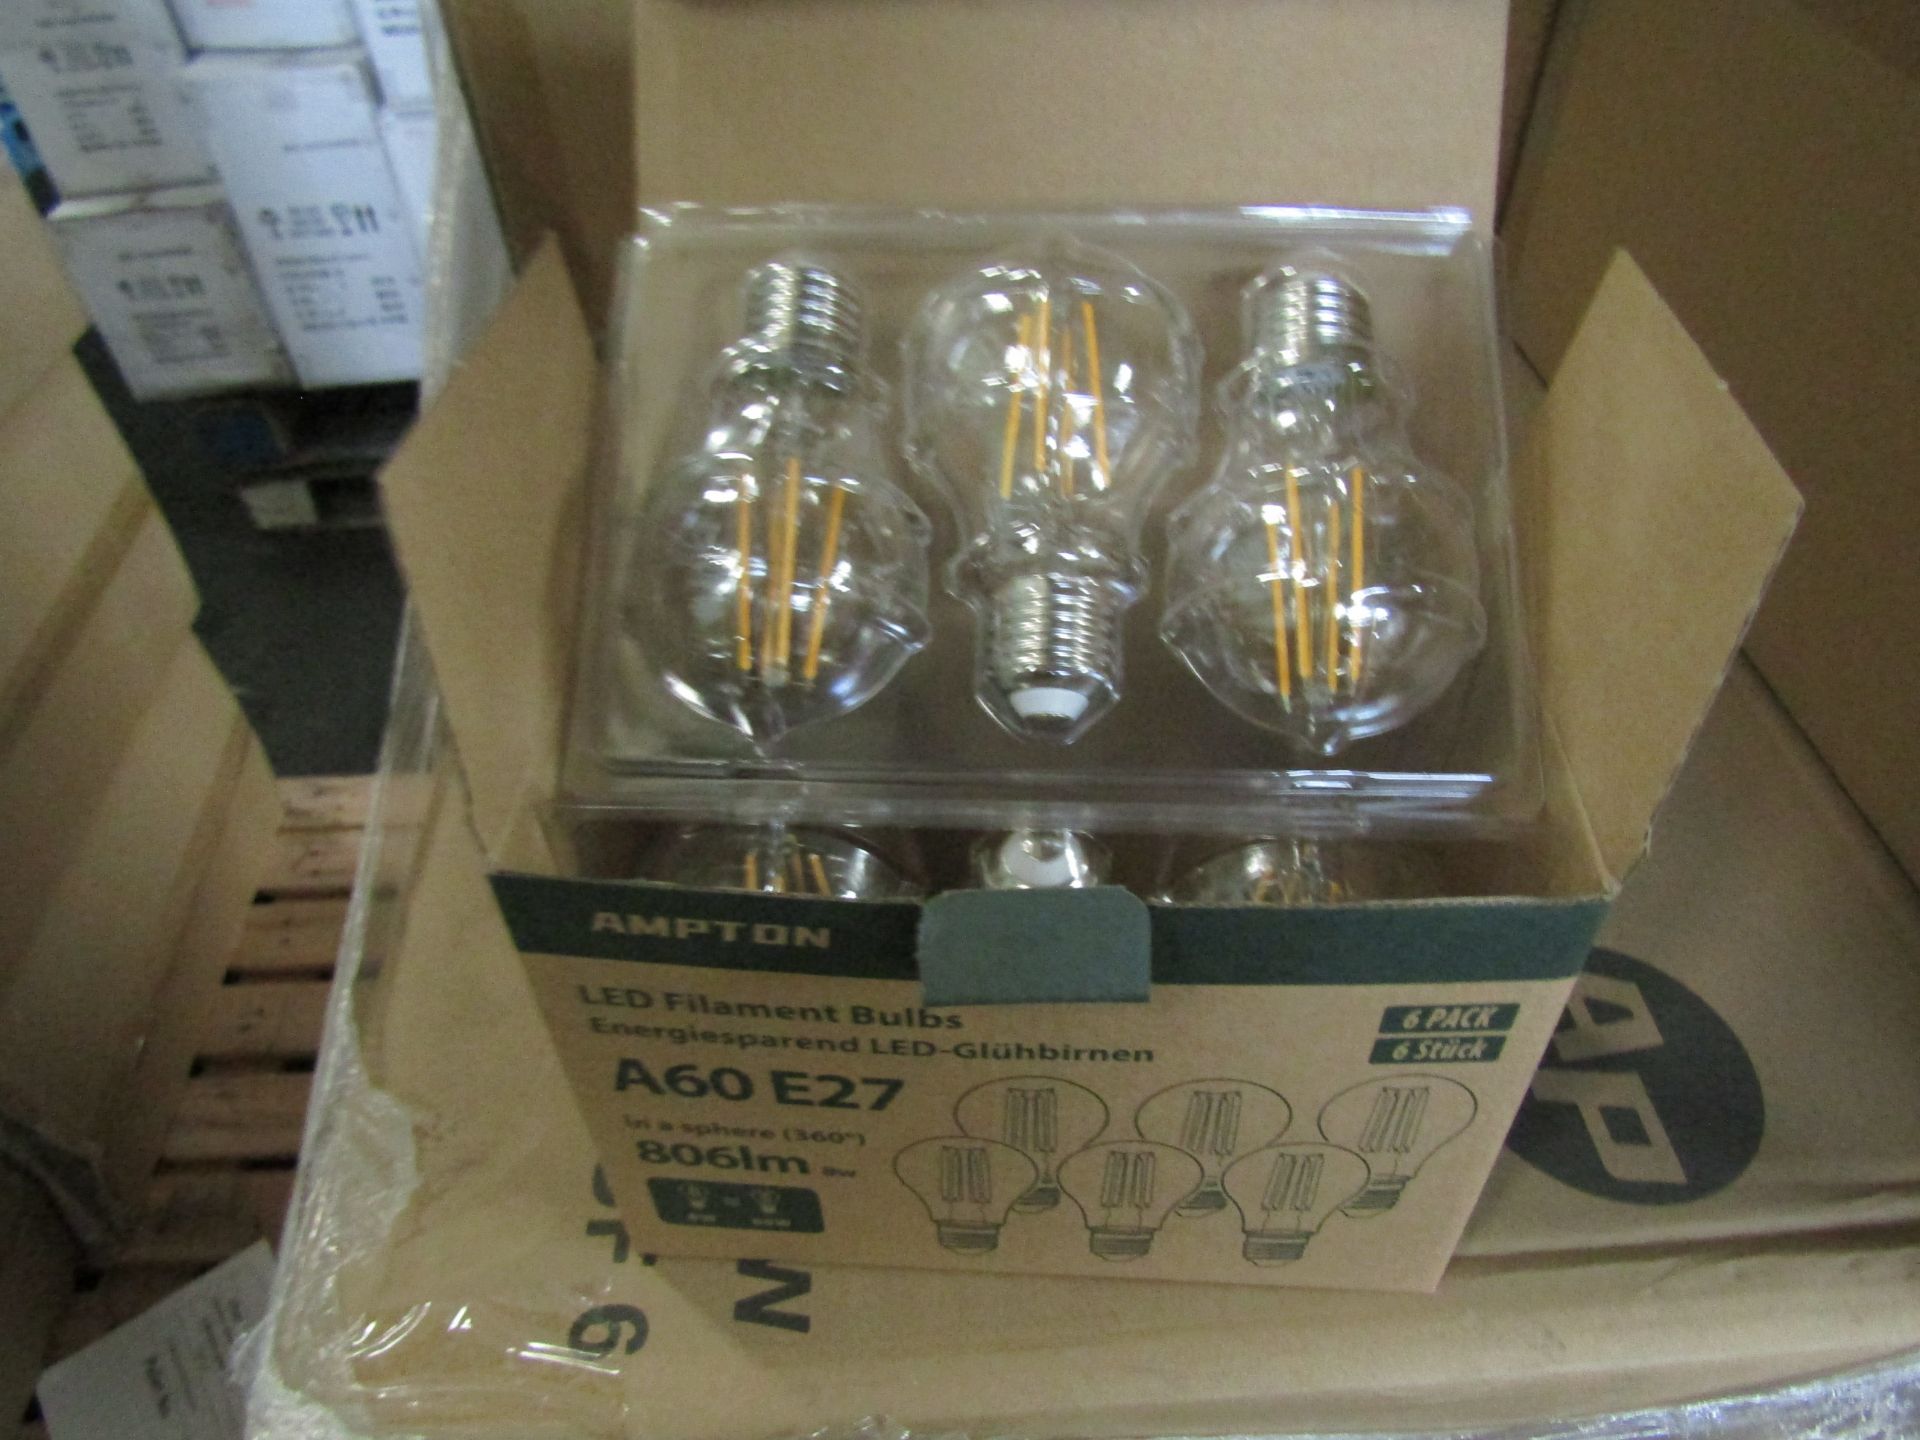 LIGHTNUM - E27 1200 Lumen LED Light Bulbs - Pack of 15 - New & Boxed.